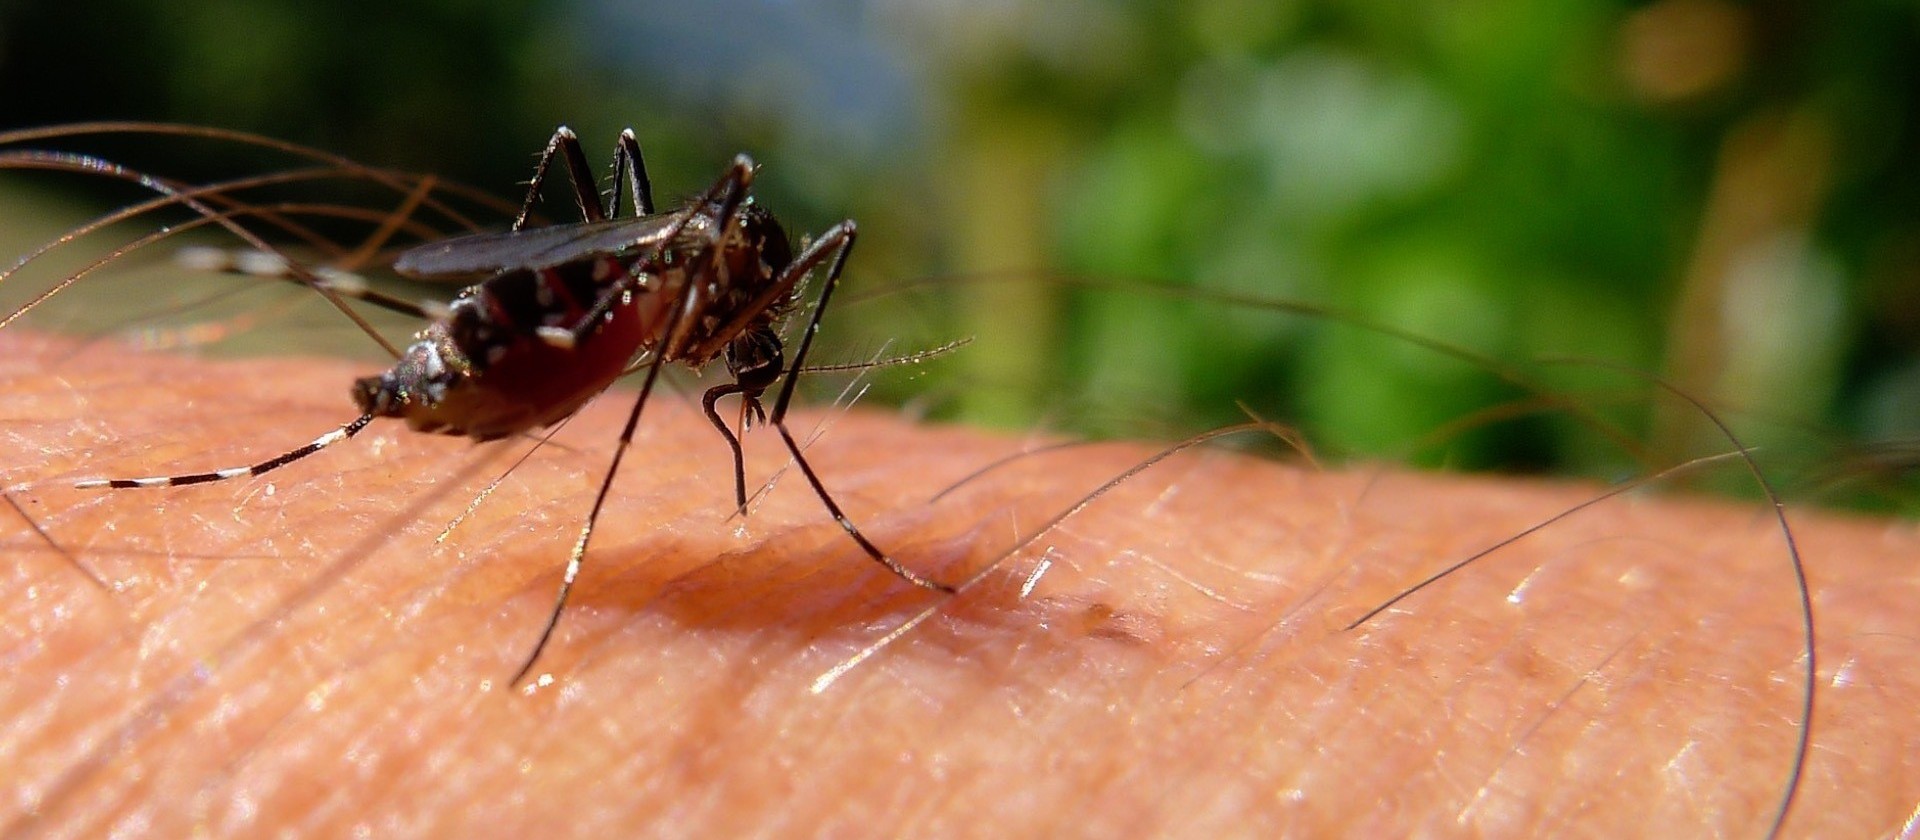 Saúde confirma dengue como causa da morte de menino de 10 anos